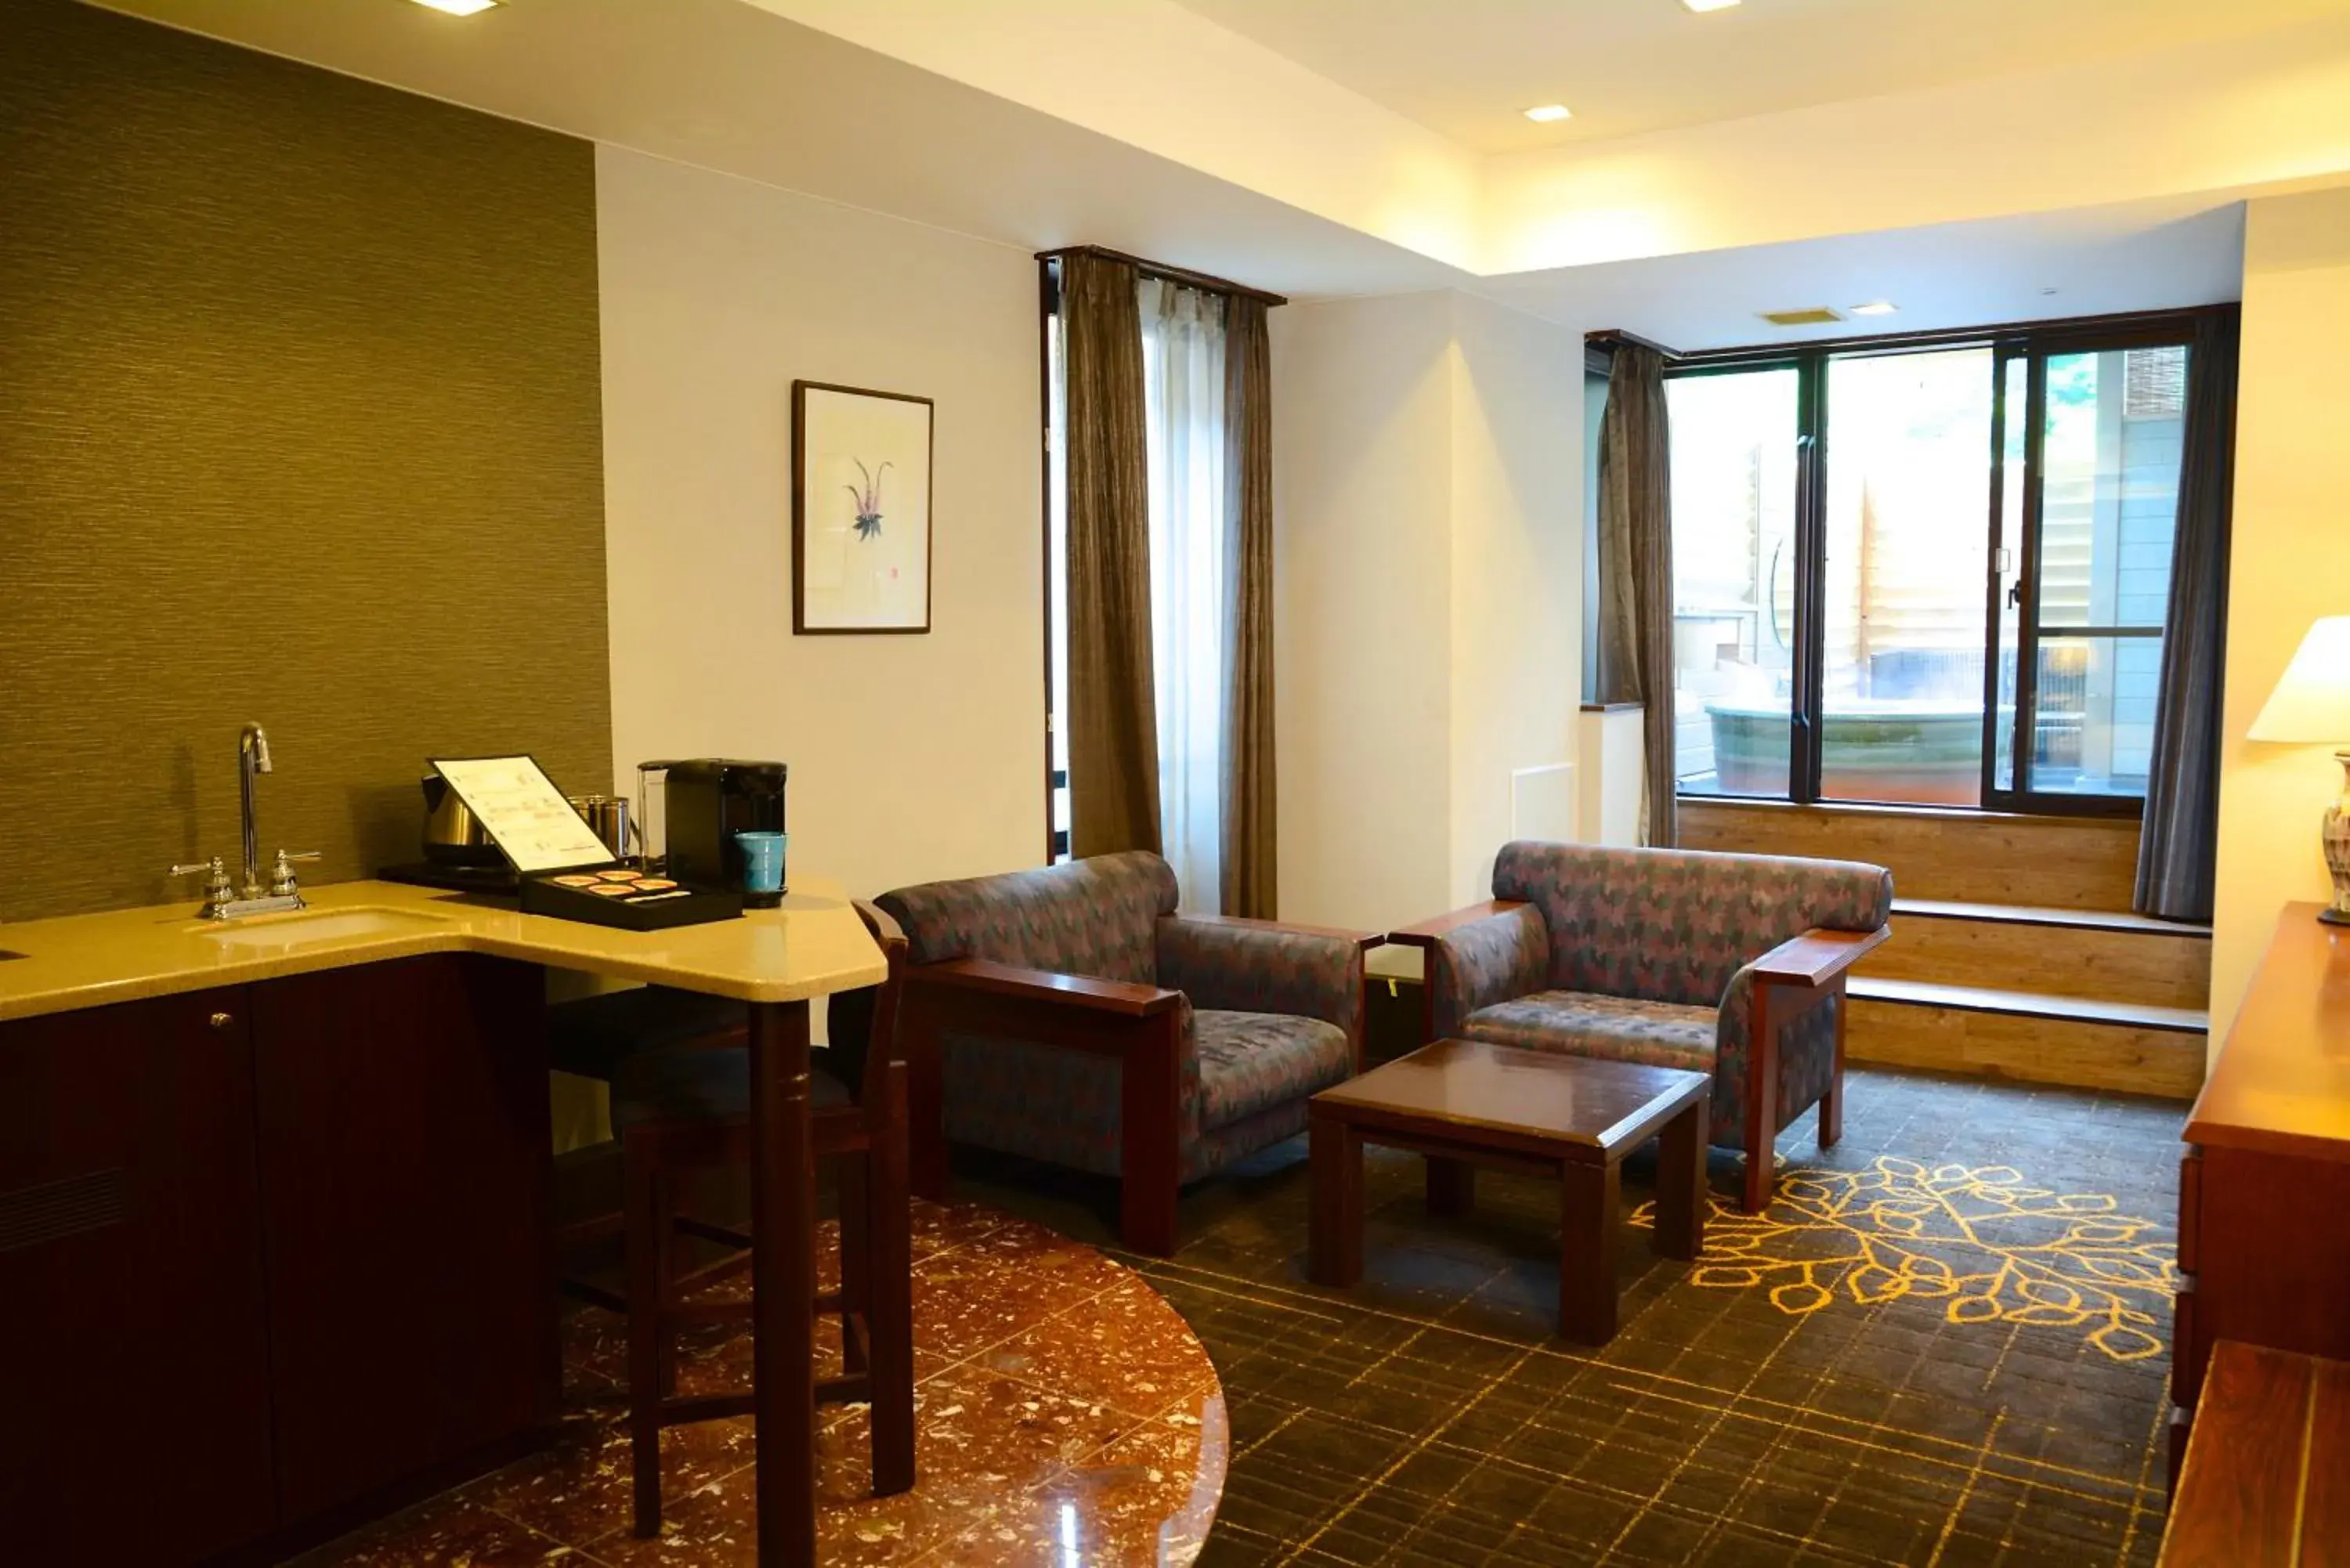 Photo of the whole room in Karuizawakurabu Hotel 1130 Hewitt Resort